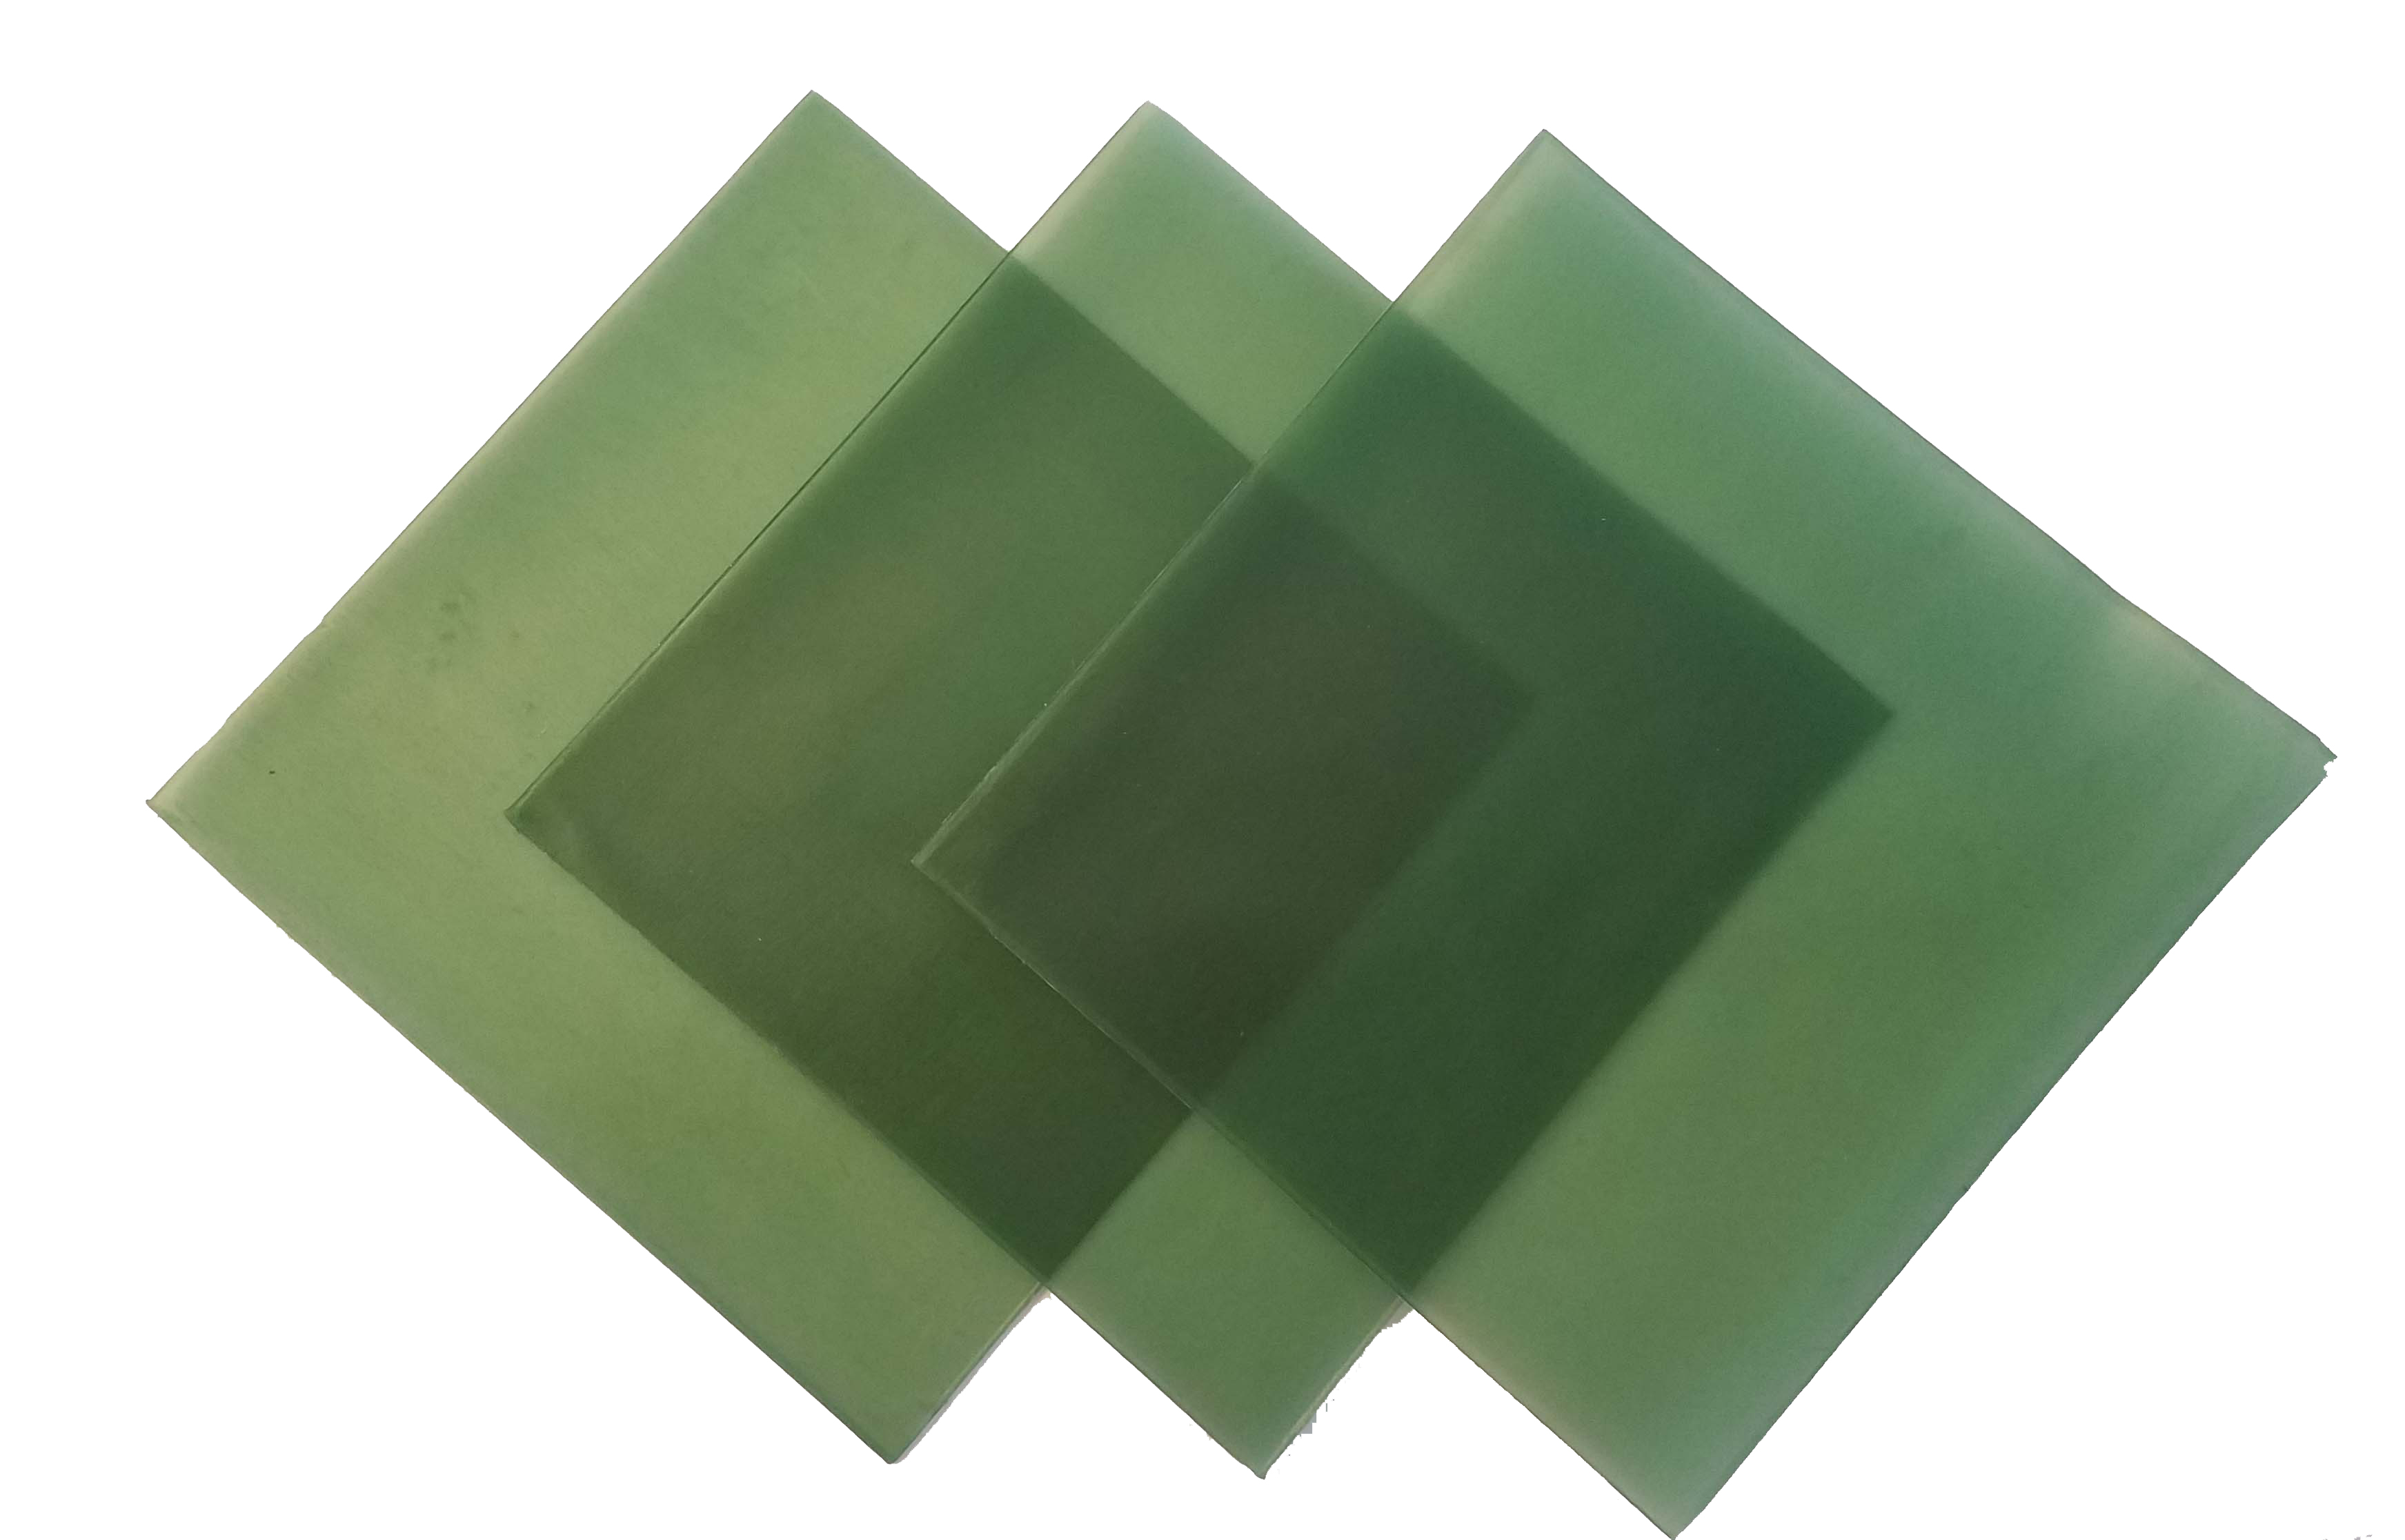 4"x4" sheet wax 22 gauge green